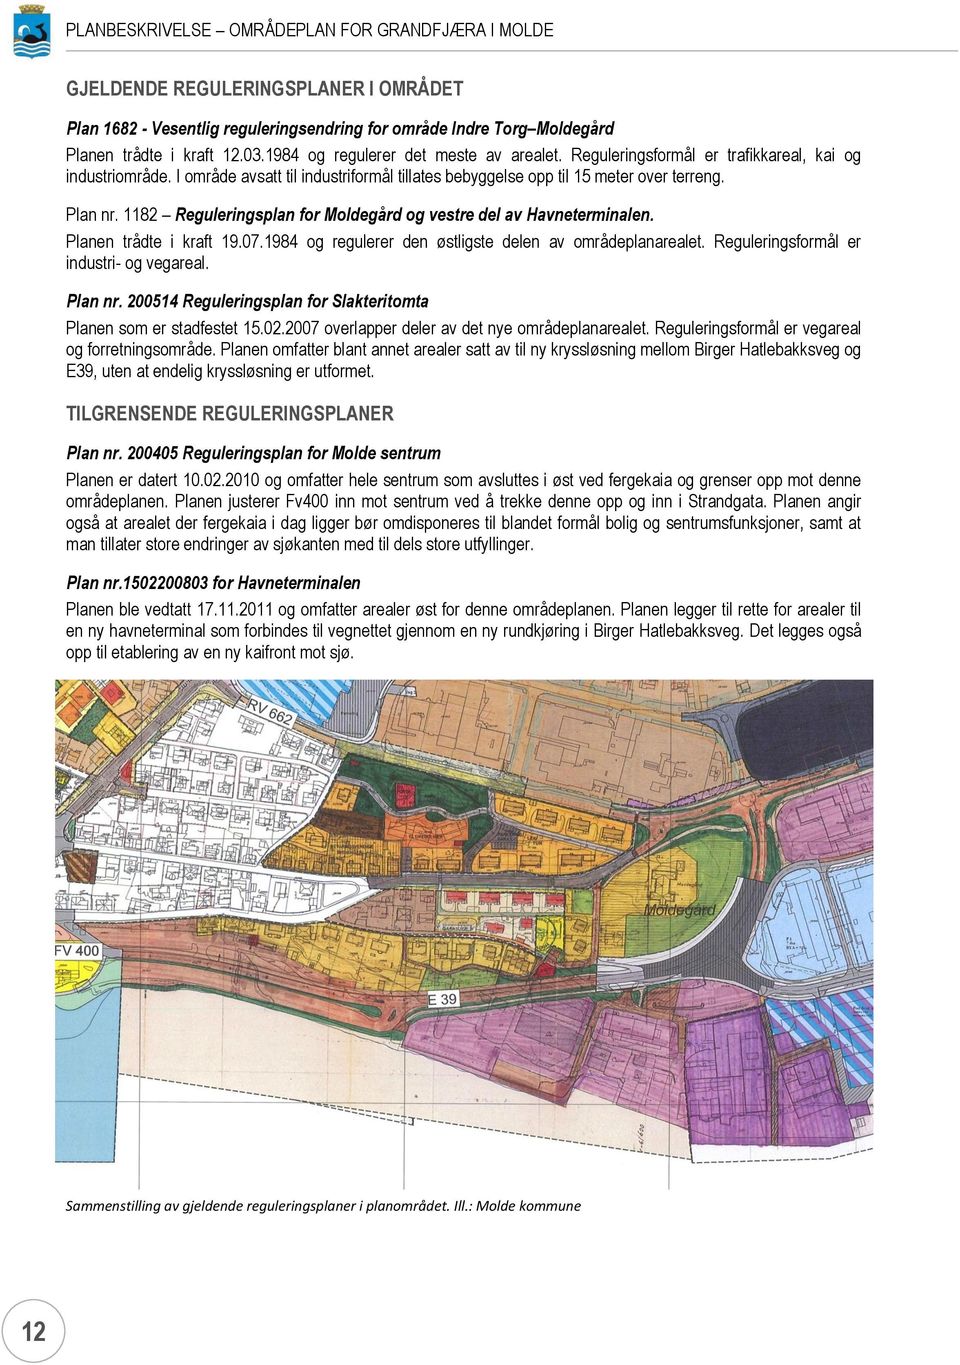 1182 Reguleringsplan for Moldegård og vestre del av Havneterminalen. Planen trådte i kraft 19.07.1984 og regulerer den østligste delen av områdeplanarealet. Reguleringsformål er industri- og vegareal.